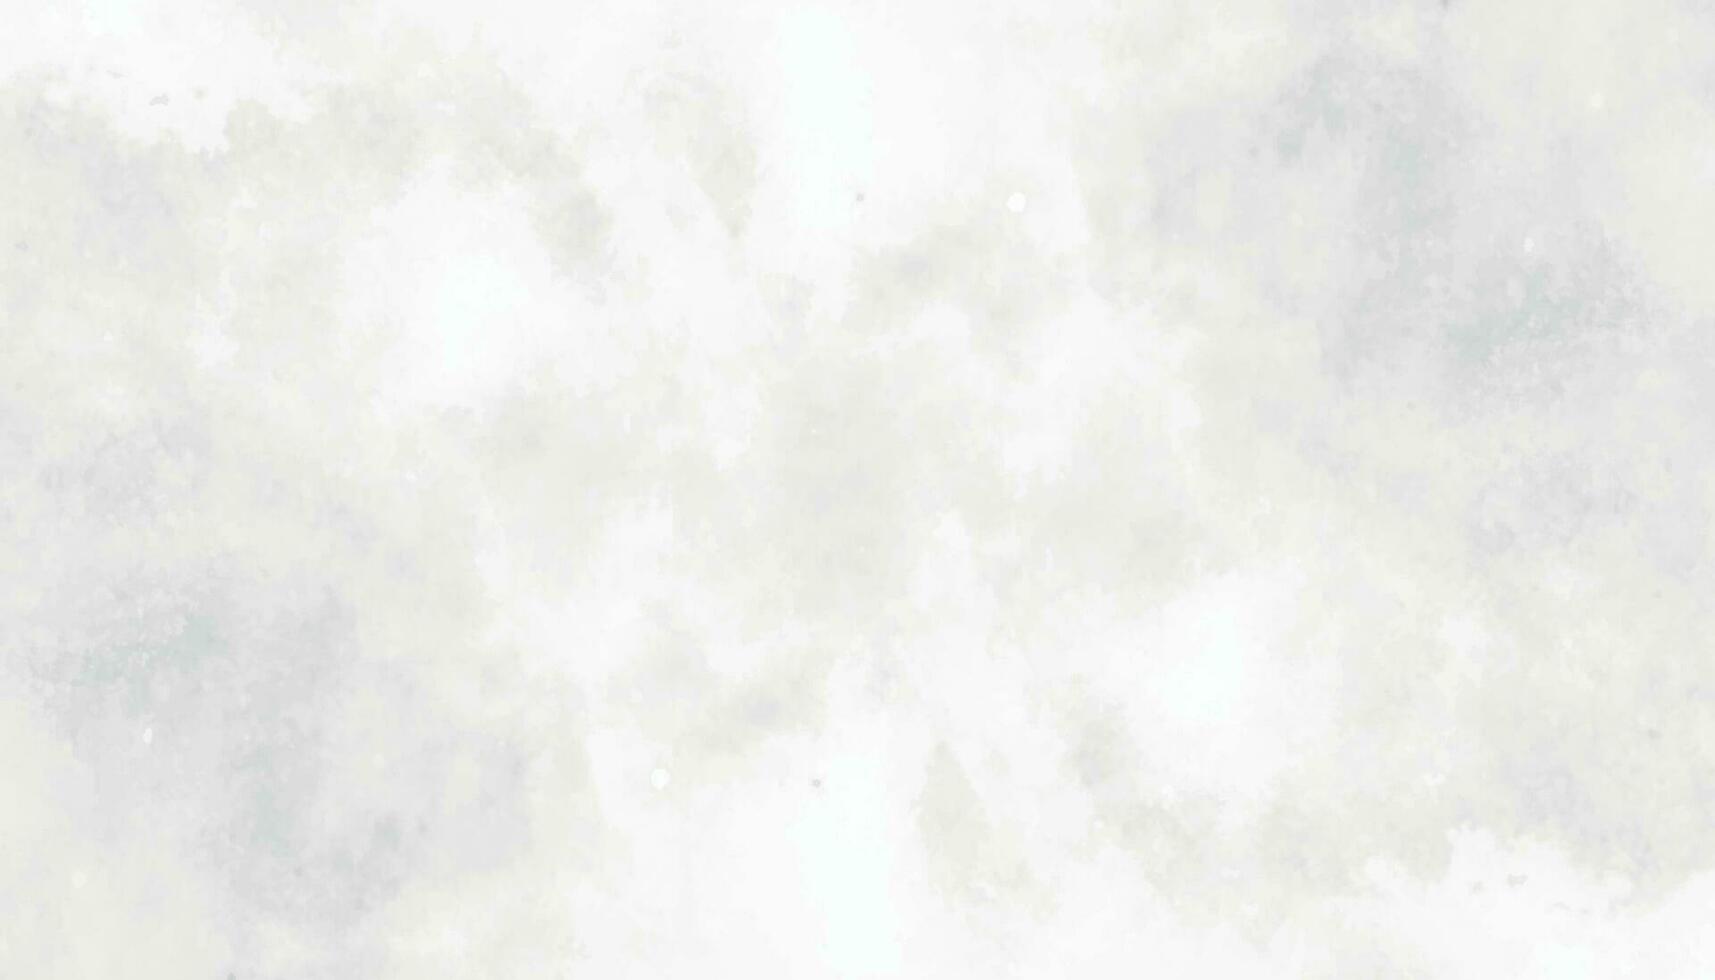 monocromatico nero e bianca inchiostro effetto acquerello. astratto grunge grigio occhiali da sole acquerello sfondo. spalmato grigio aquarelle dipinto carta strutturato. argento inchiostro e acquerello textures su bianca carta. vettore